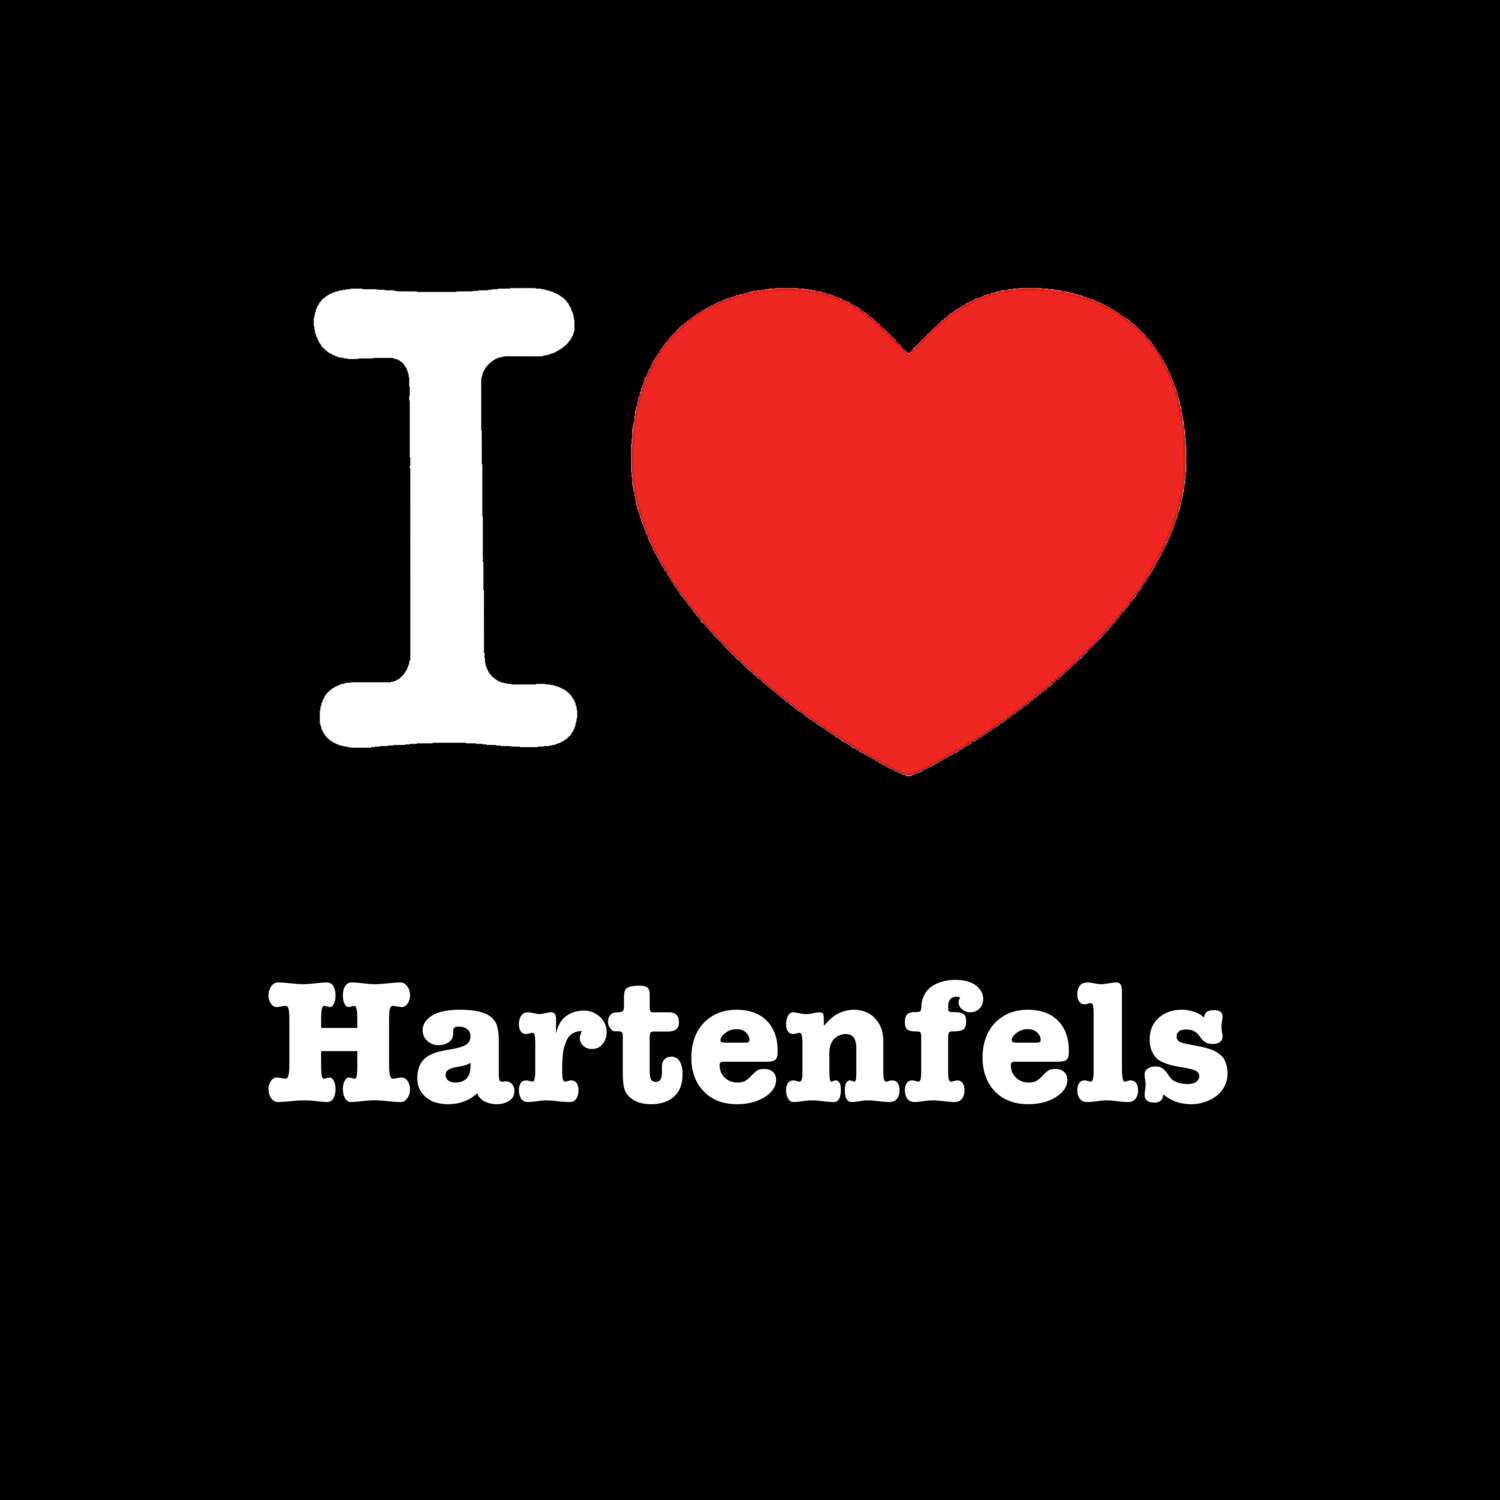 Hartenfels T-Shirt »I love«